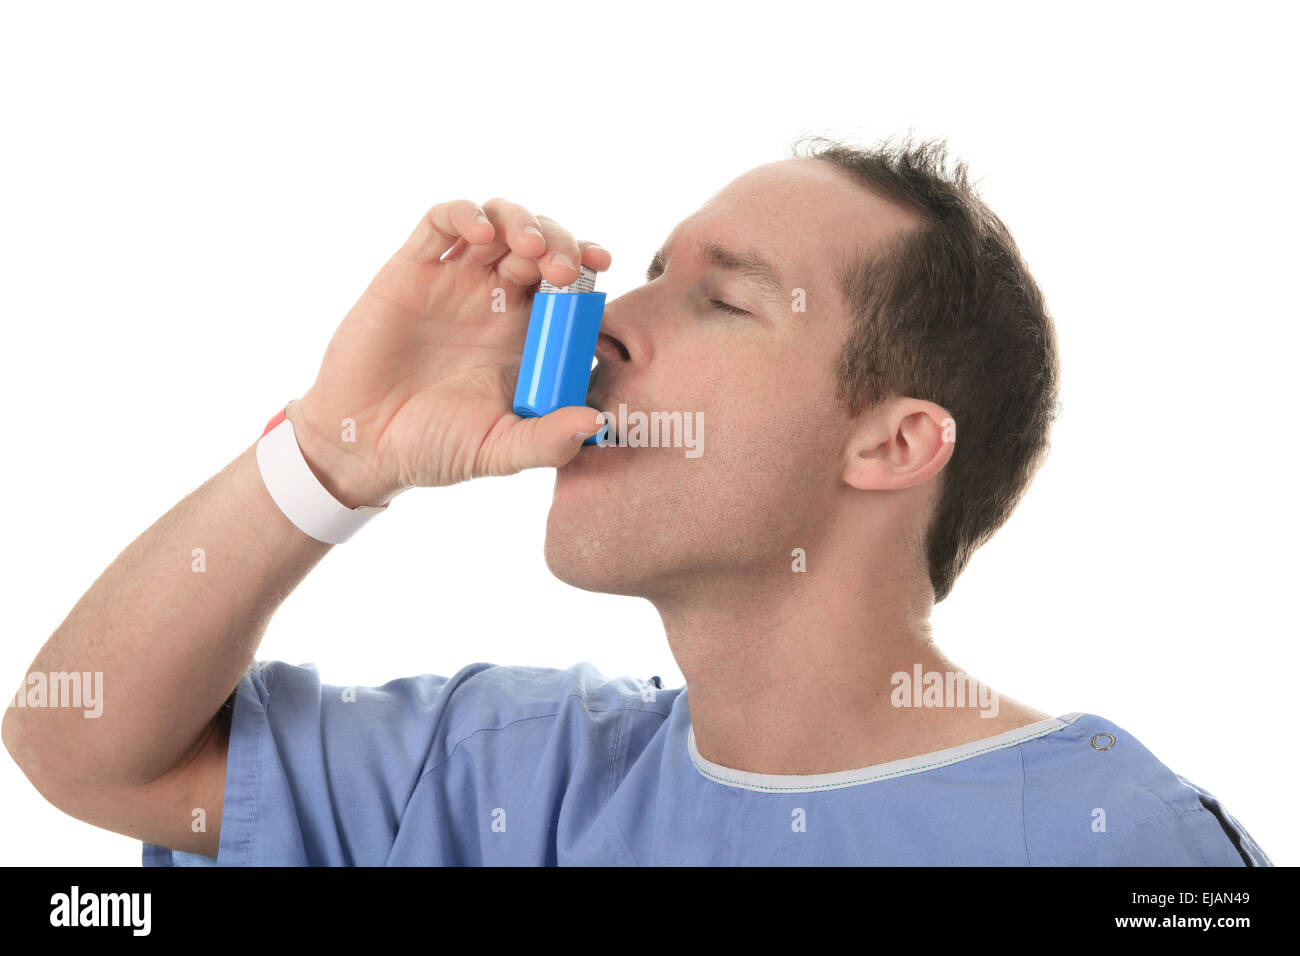 Баня при астме. Астматик. Пациент кашляет. Ингалятор астма. Человек задыхается от астмы.